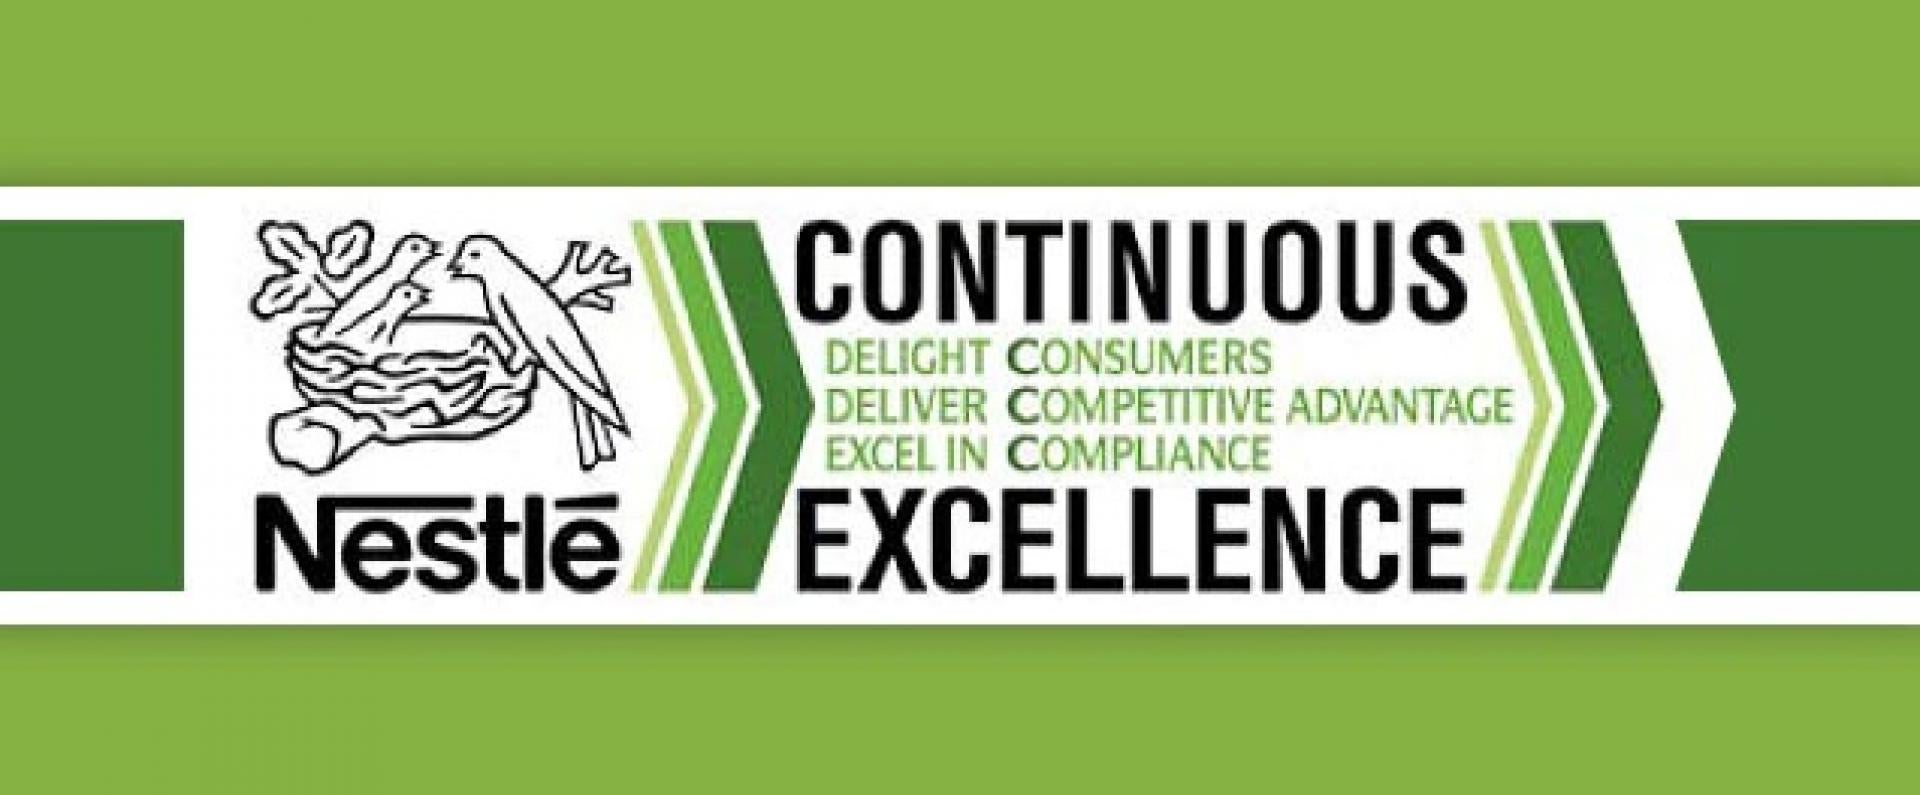 Nestlé Continuous Excellence banner